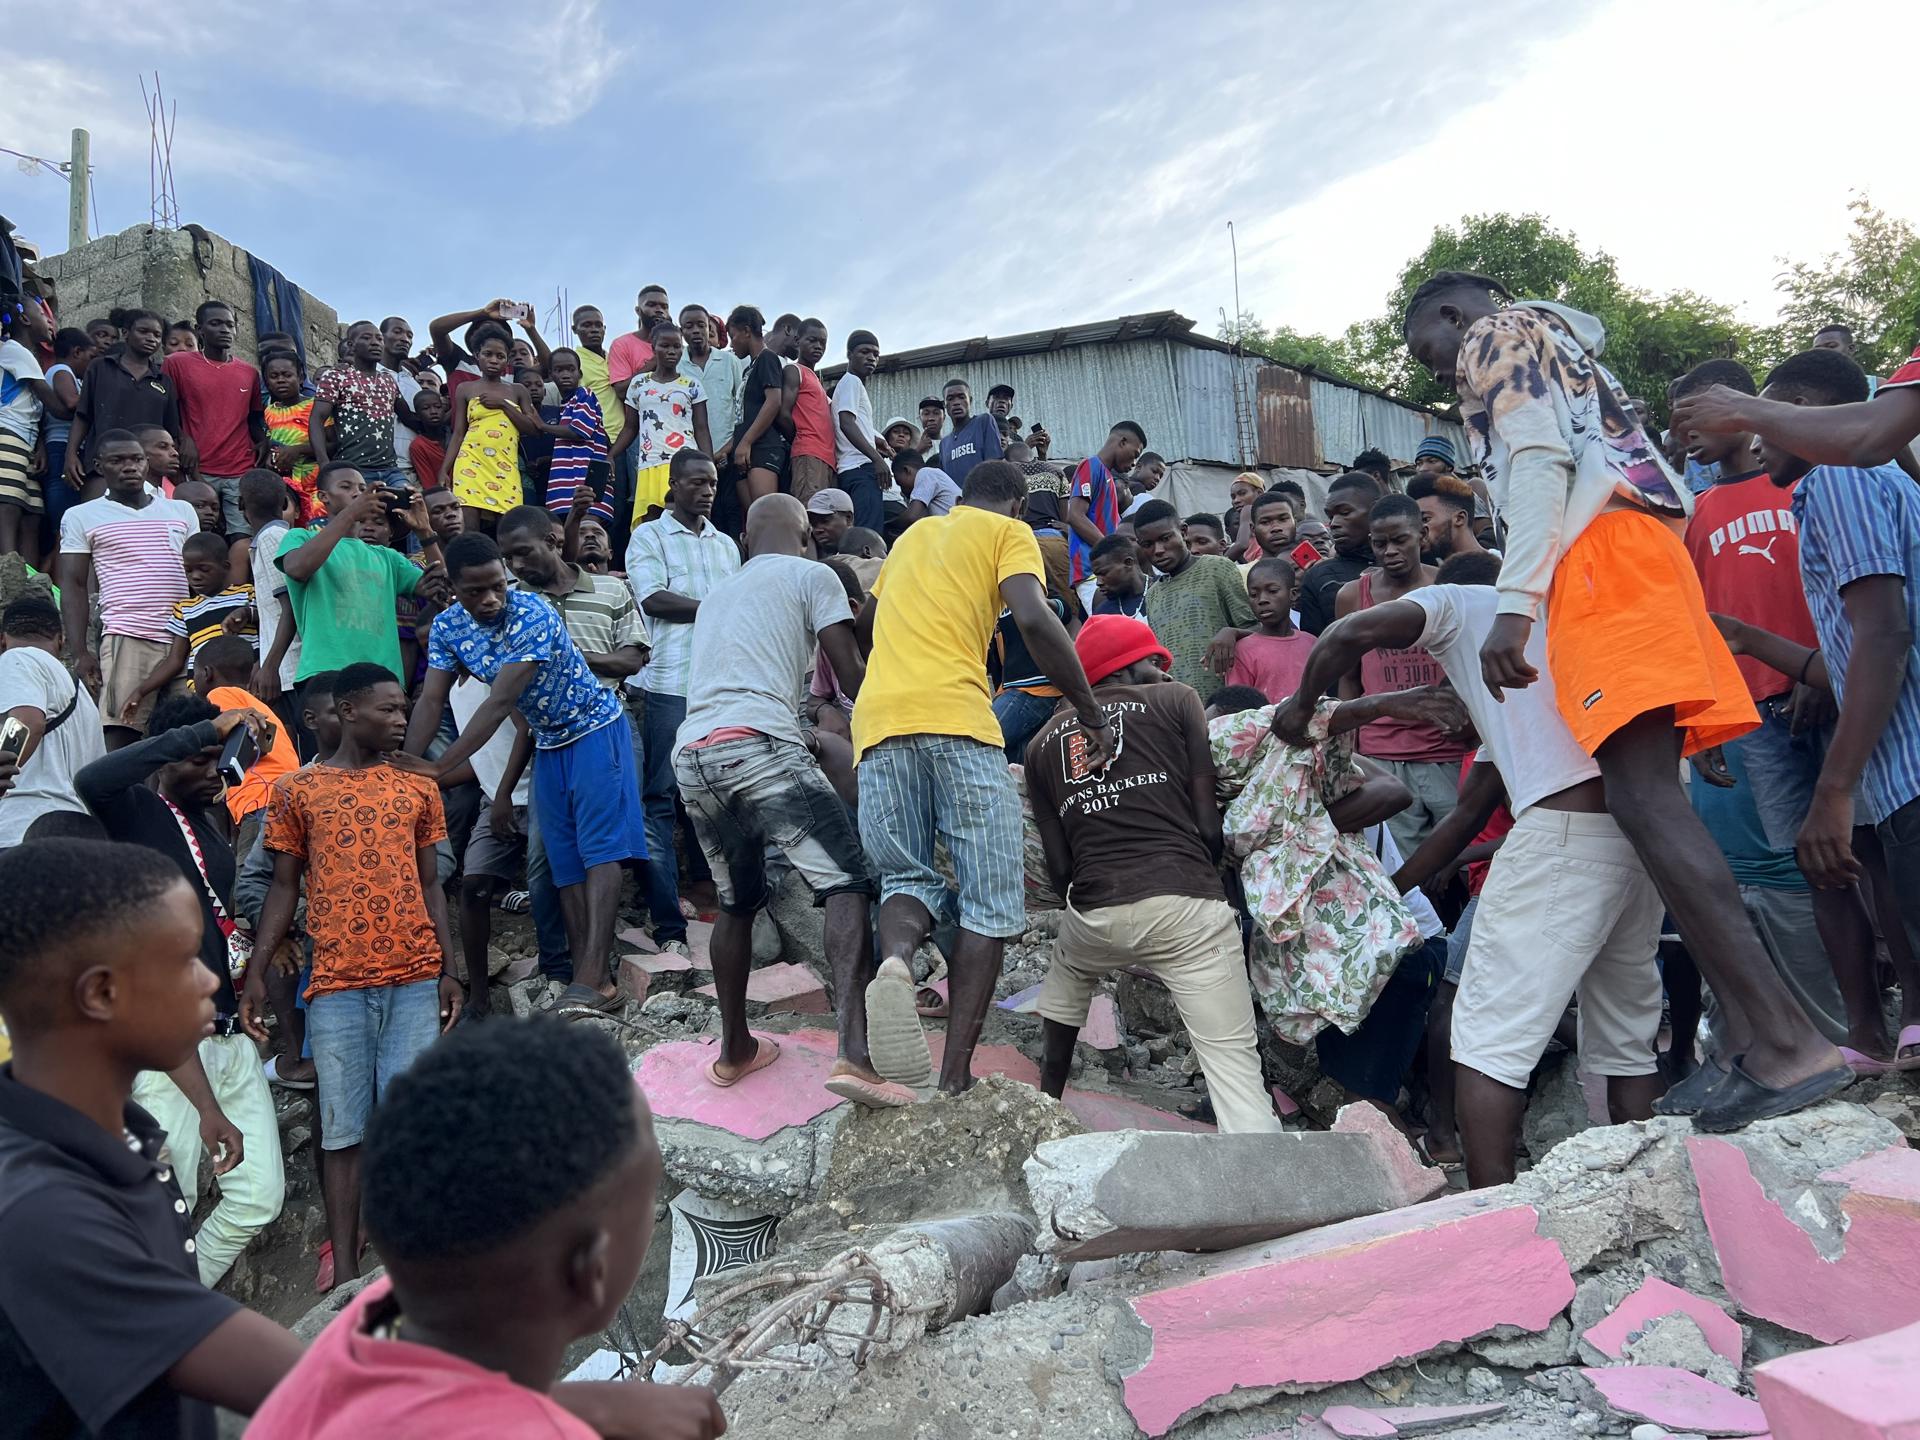 La ONU ofrece asistencia a Haití tras el terremoto FOTO: FUENTE EXTERNA